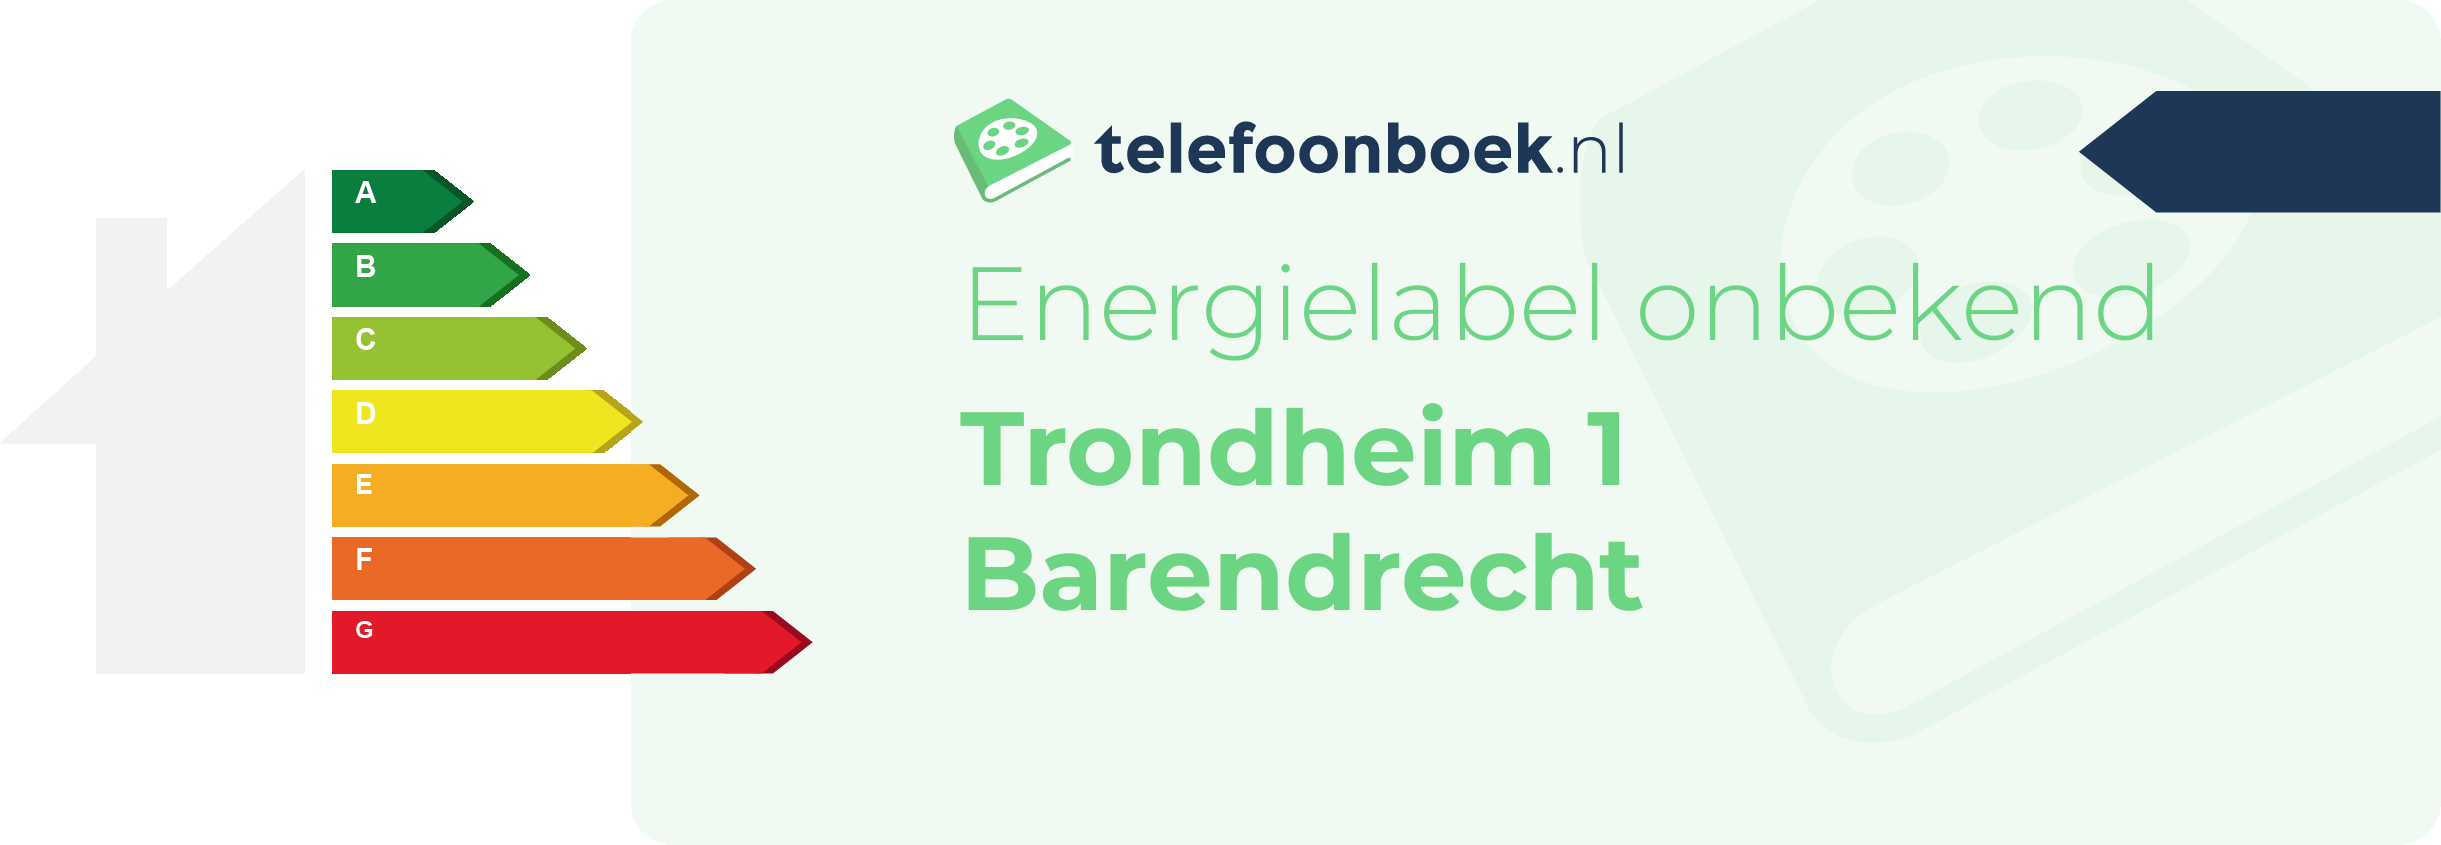 Energielabel Trondheim 1 Barendrecht